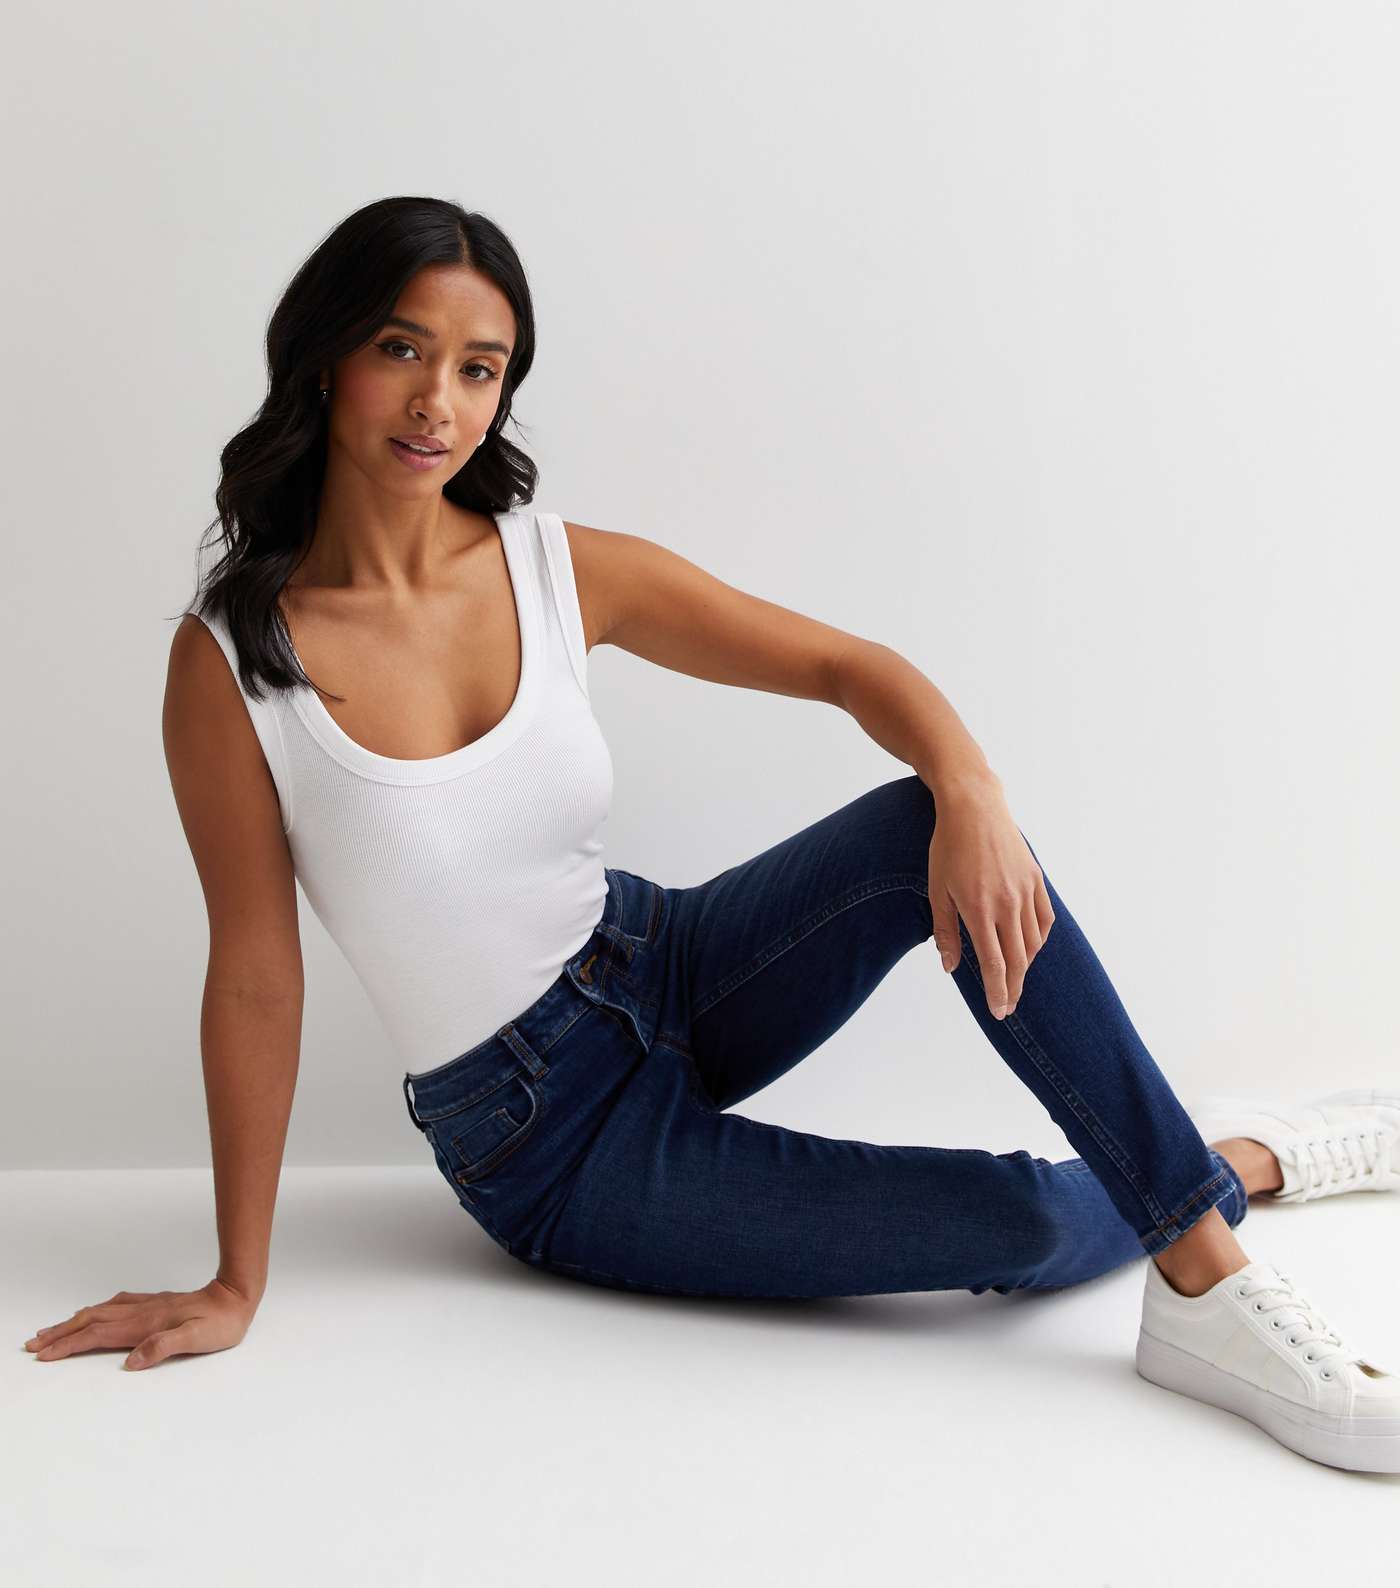 Petite Blue Lift & Shape Jenna Skinny Jeans Image 2